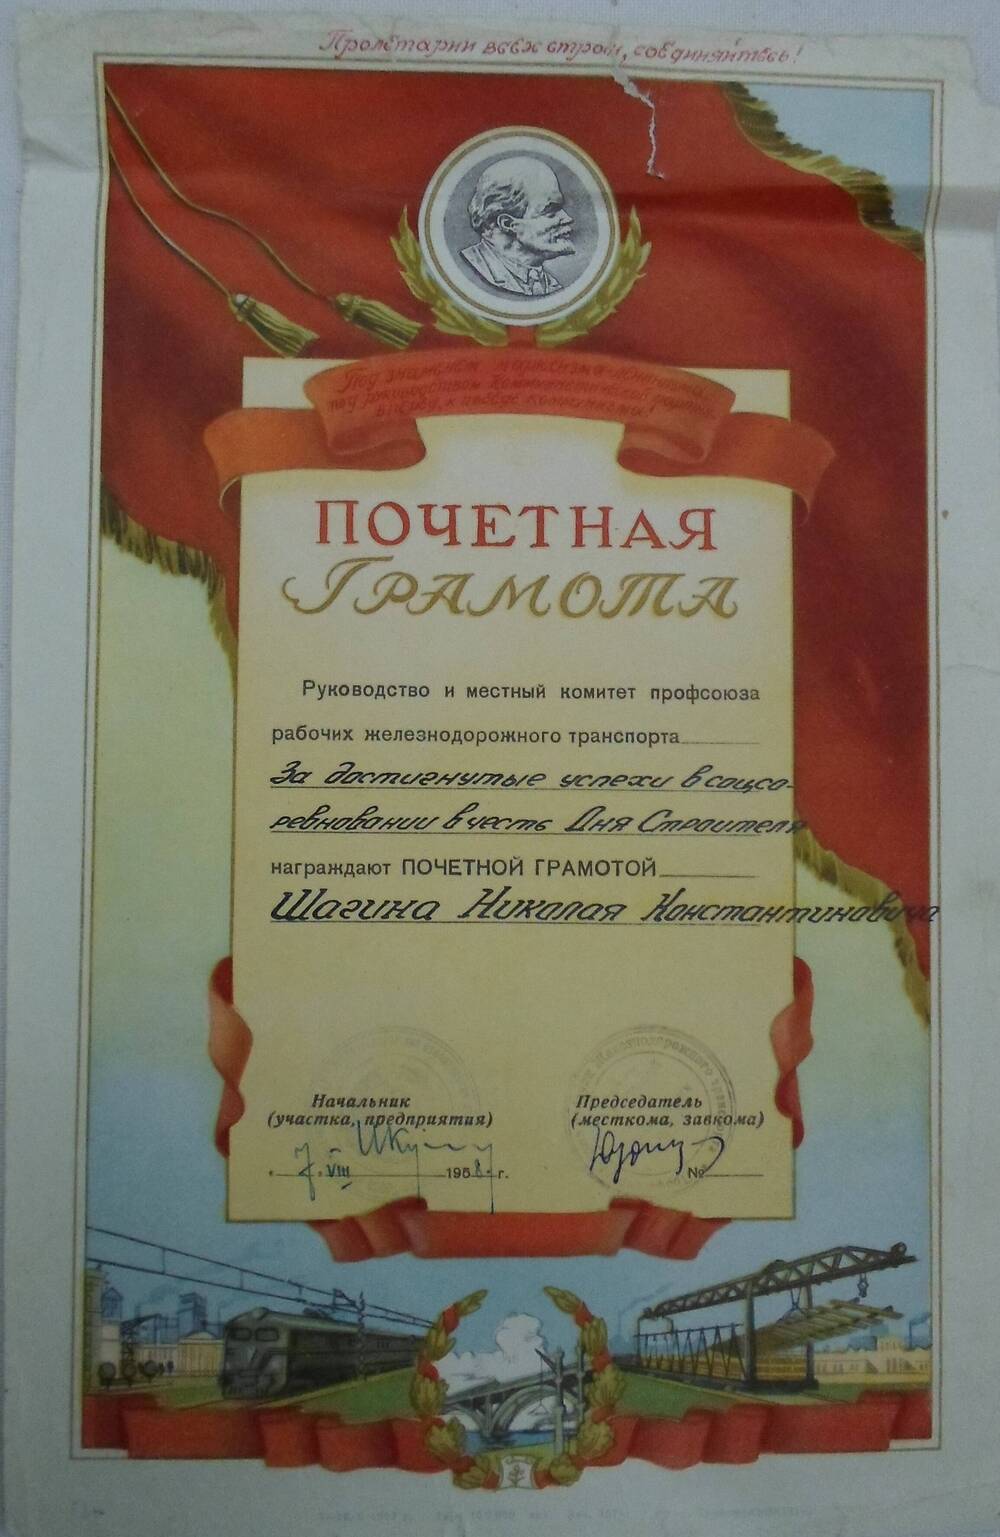 Почетная грамота Шагина Николая Константиновича награжден за достигнутые успехи в соцсоревновании в честь Дня Строителя.